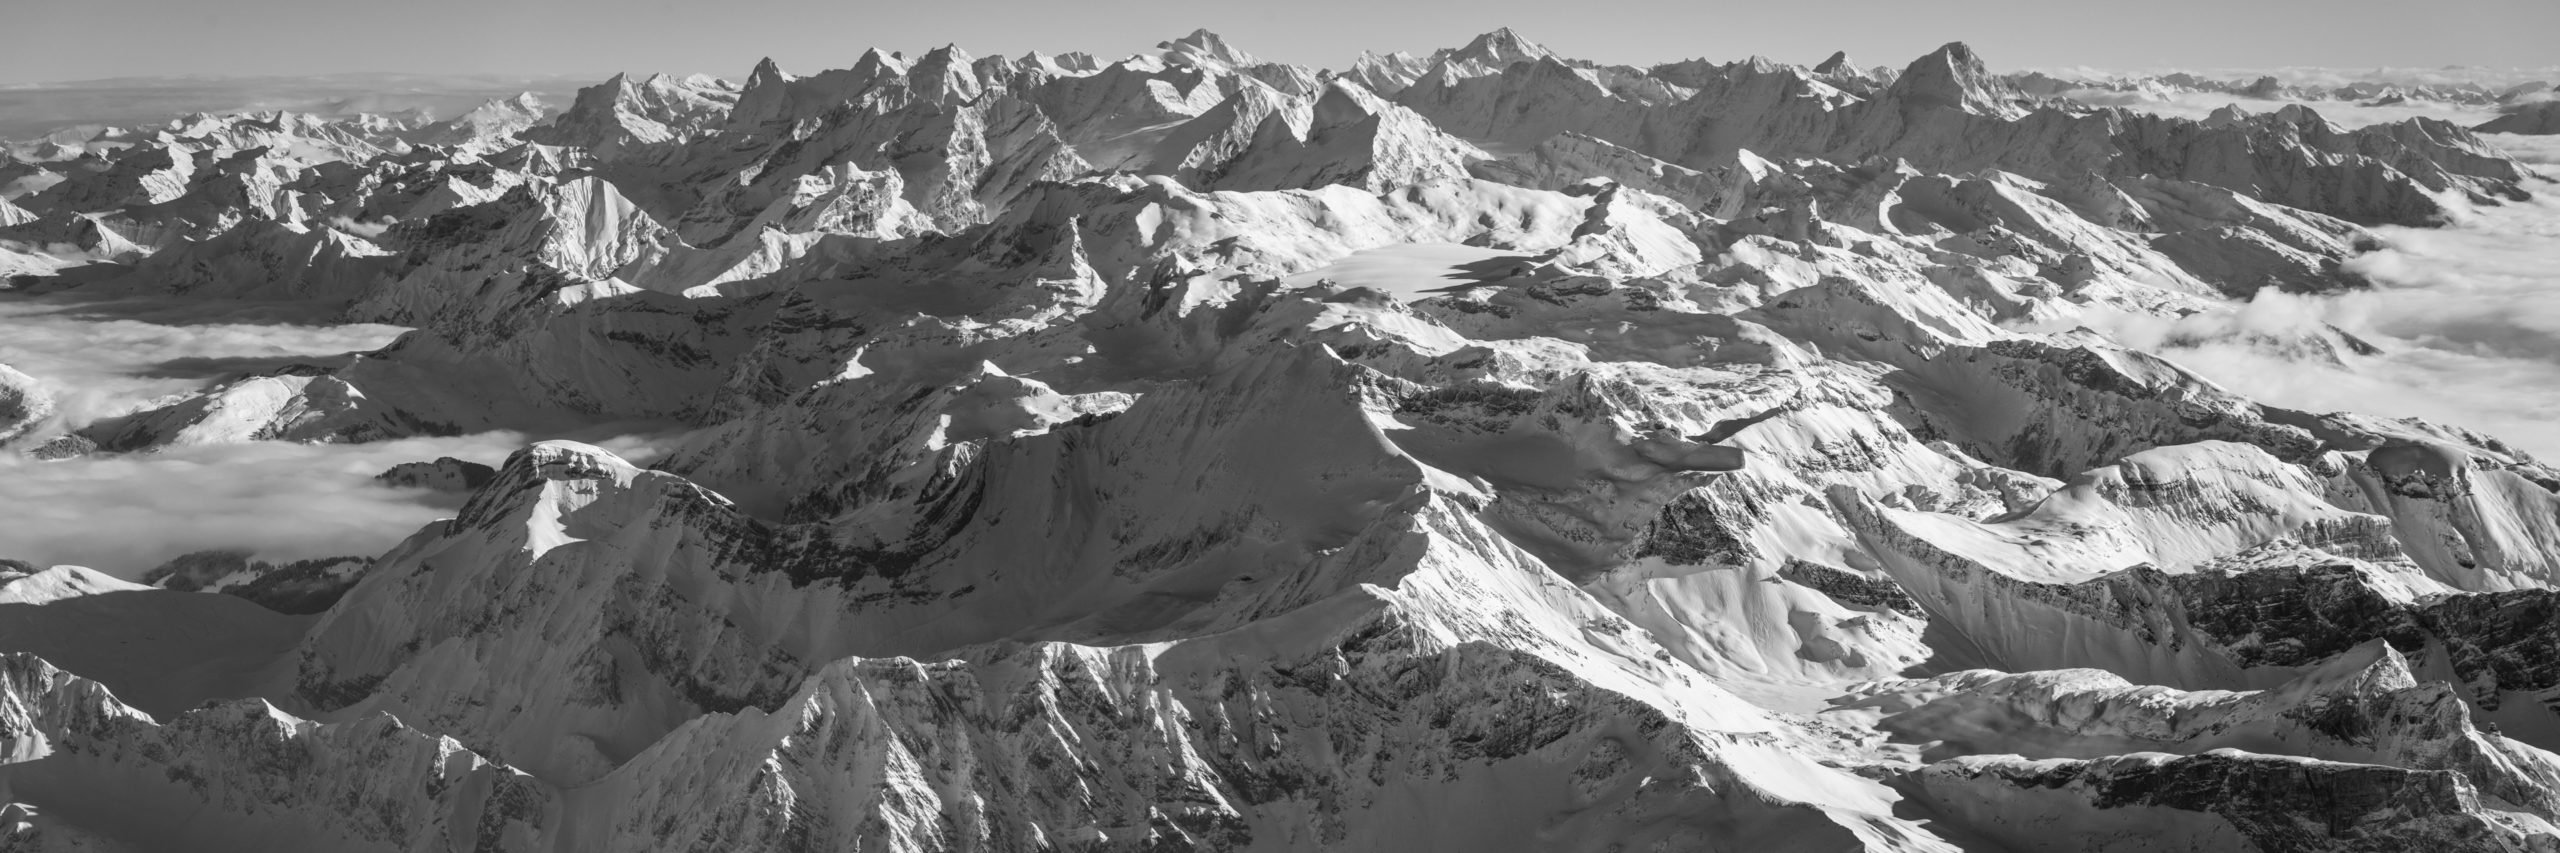 Panoramafoto der Berner Alpen - Blick von Les Diablerets (Glacier 3000) auf die Berner Alpen - Schwarz-Weiss-Foto der Nordalpen